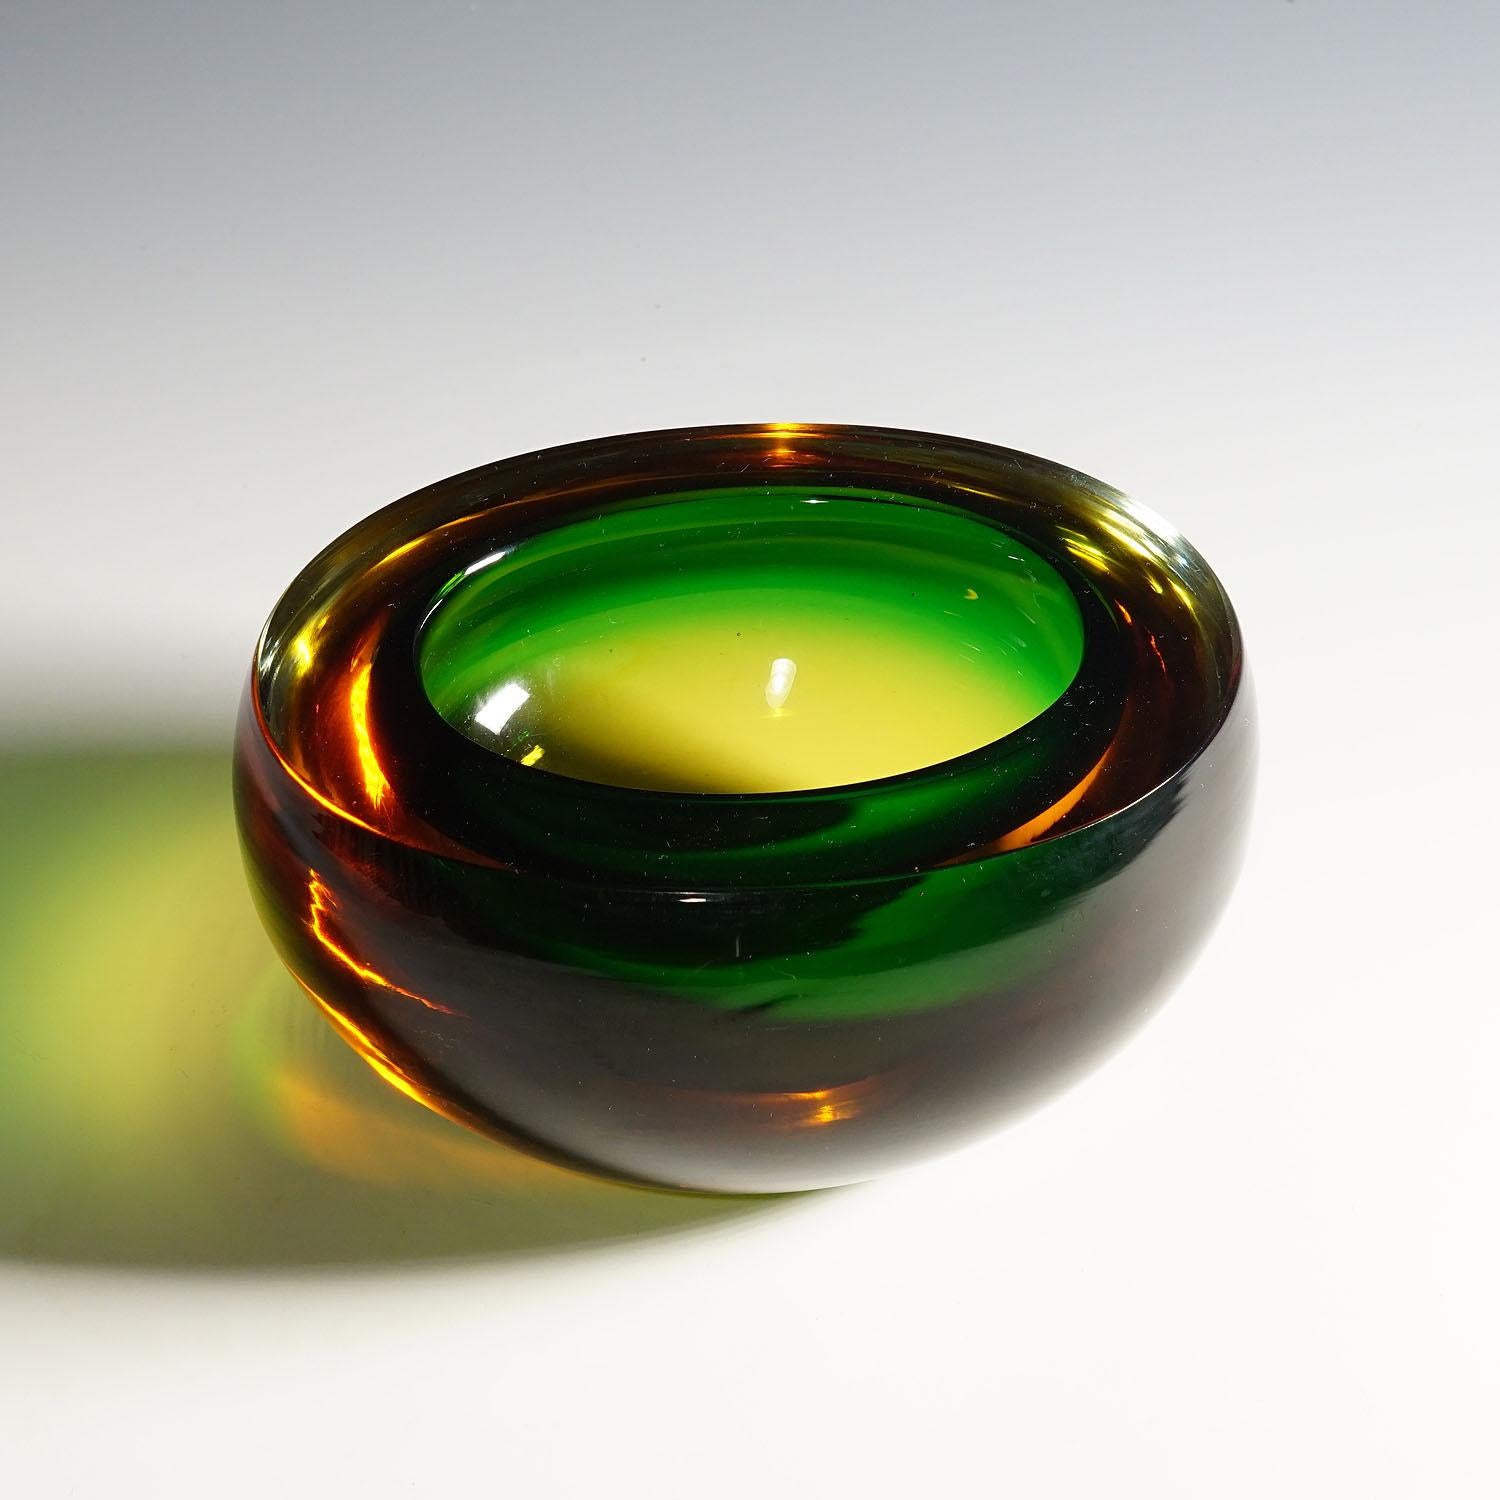 Bol en verre d'art Sommerso vert et ambre de Murano, mi-siècle moderne, années 1960

Un lourd bol en verre de Murano sommerso fabriqué par Vetreria Archimede Seguso vers les années 1960. Fabriqué en verre vert émeraude et recouvert d'une épaisse